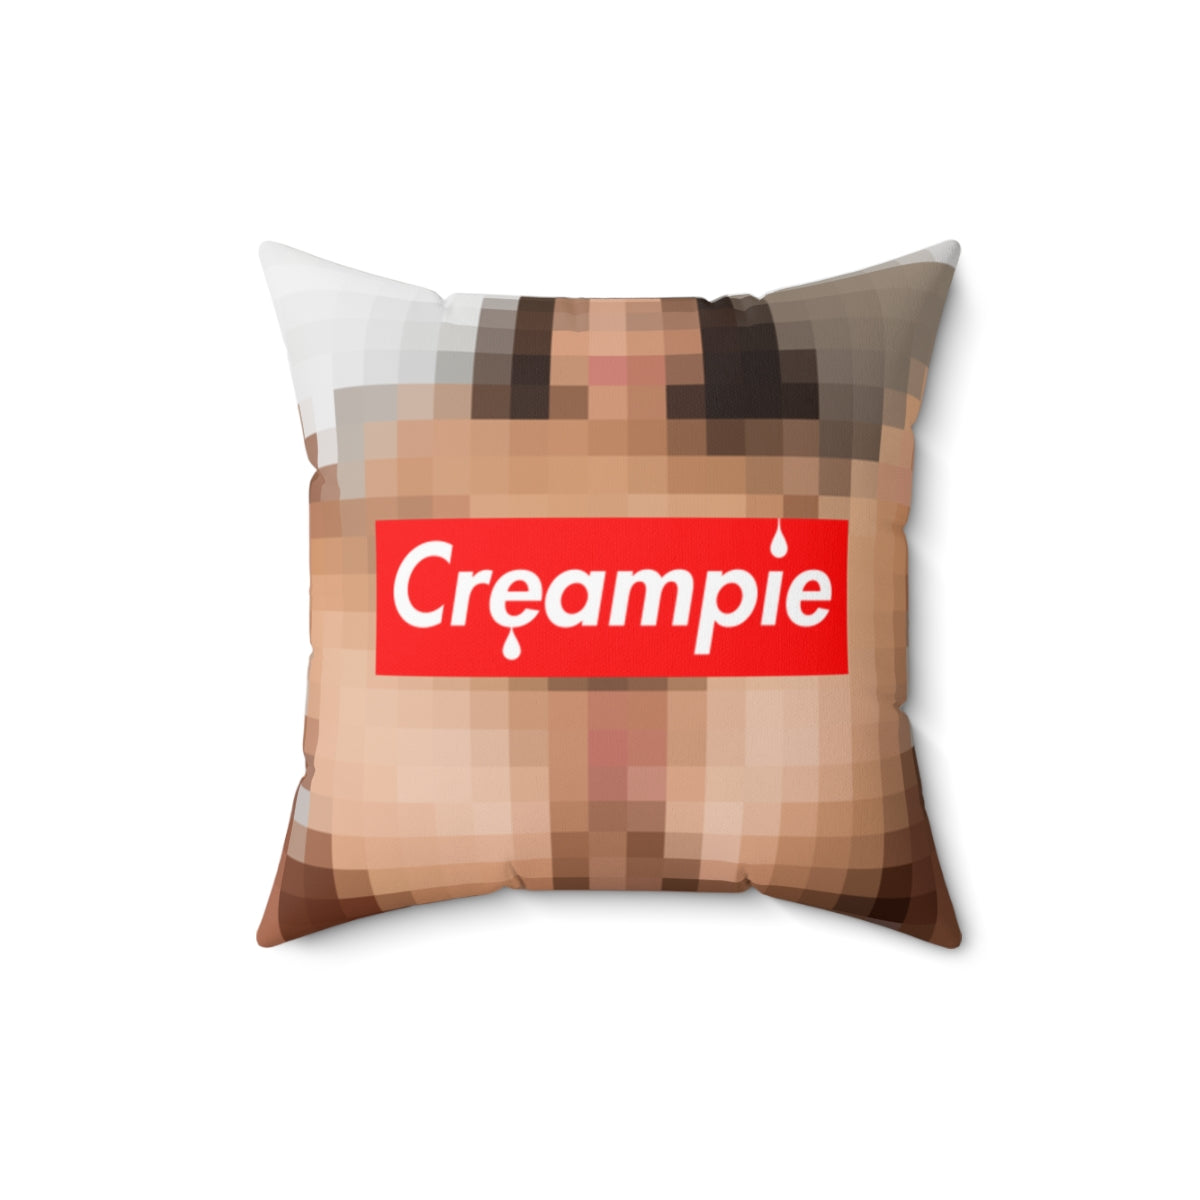 Creampie Throw Pillow